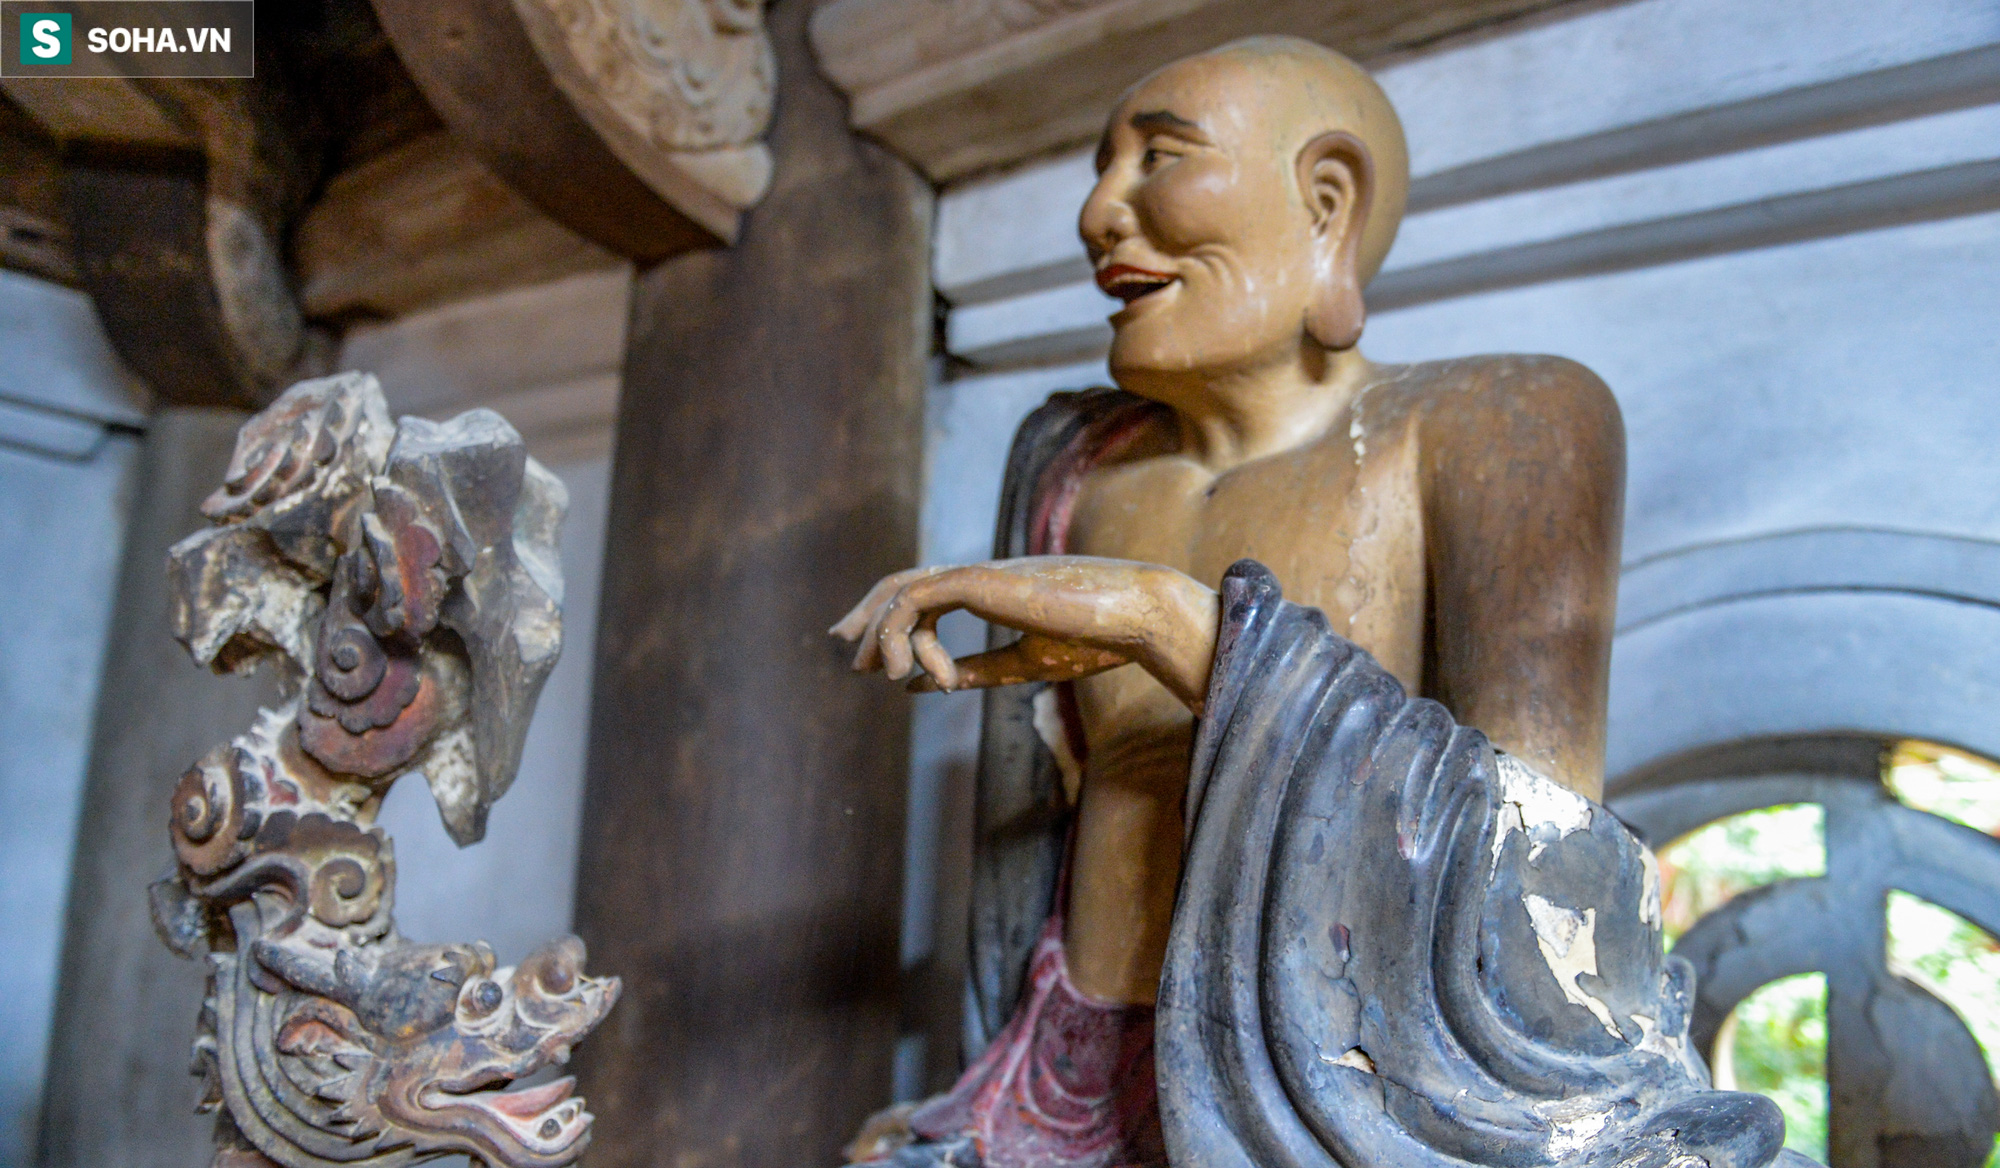  Các vị La Hán chùa Tây Phương đang xuống cấp nghiêm trọng, bong tróc hết lớp sơn son - Ảnh 9.